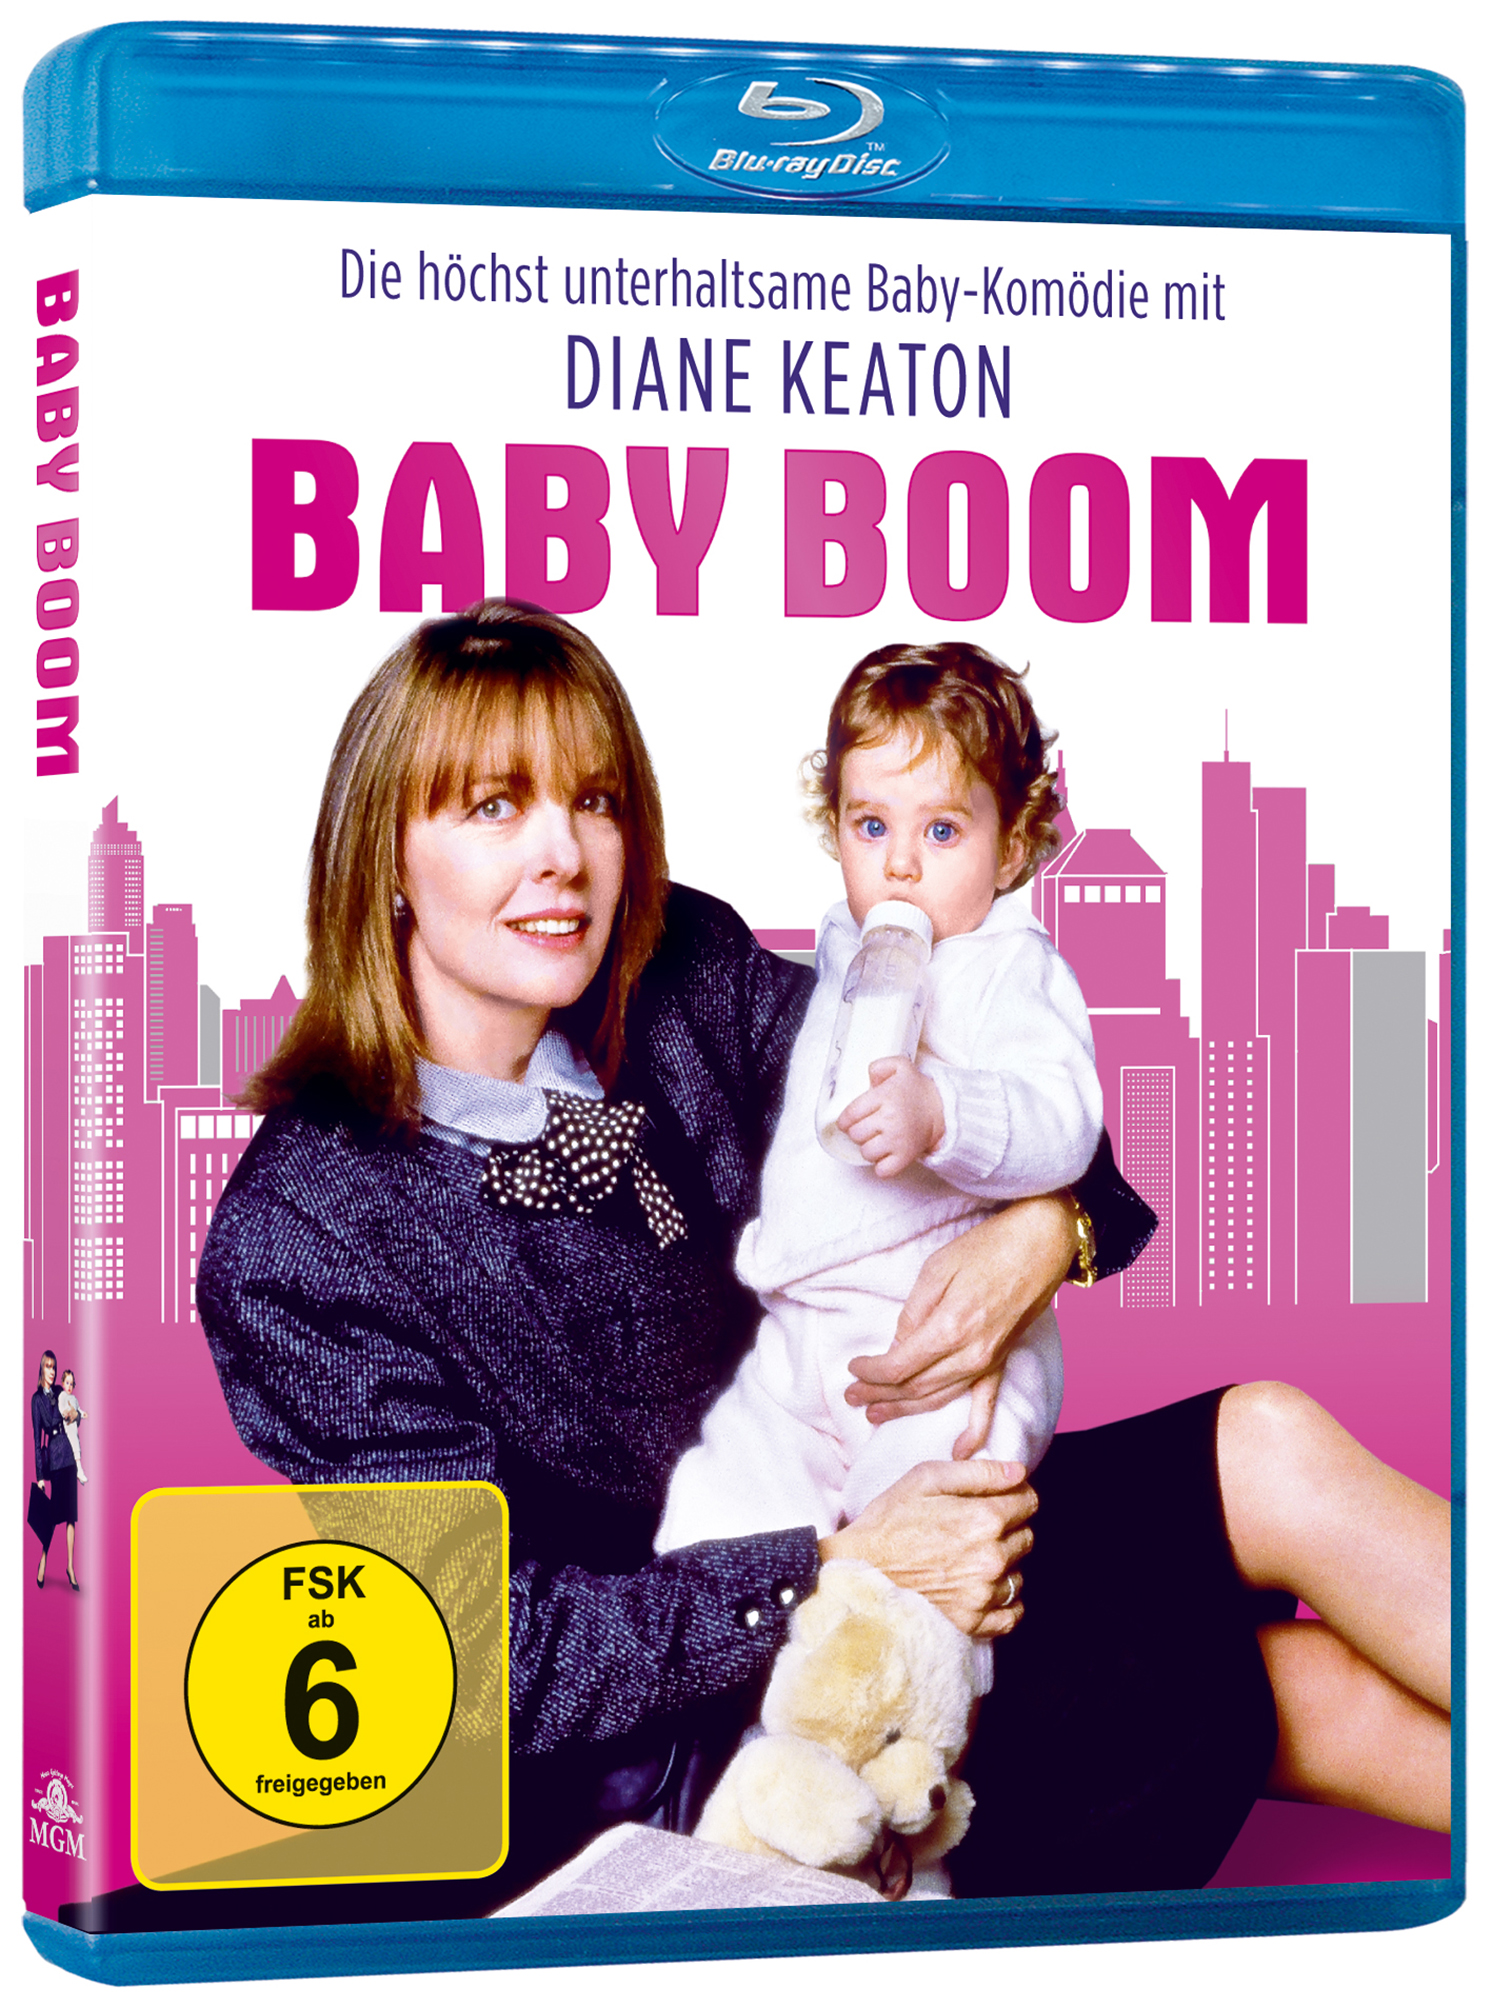 Blu-ray Bescherung - Boom Eine schöne Baby